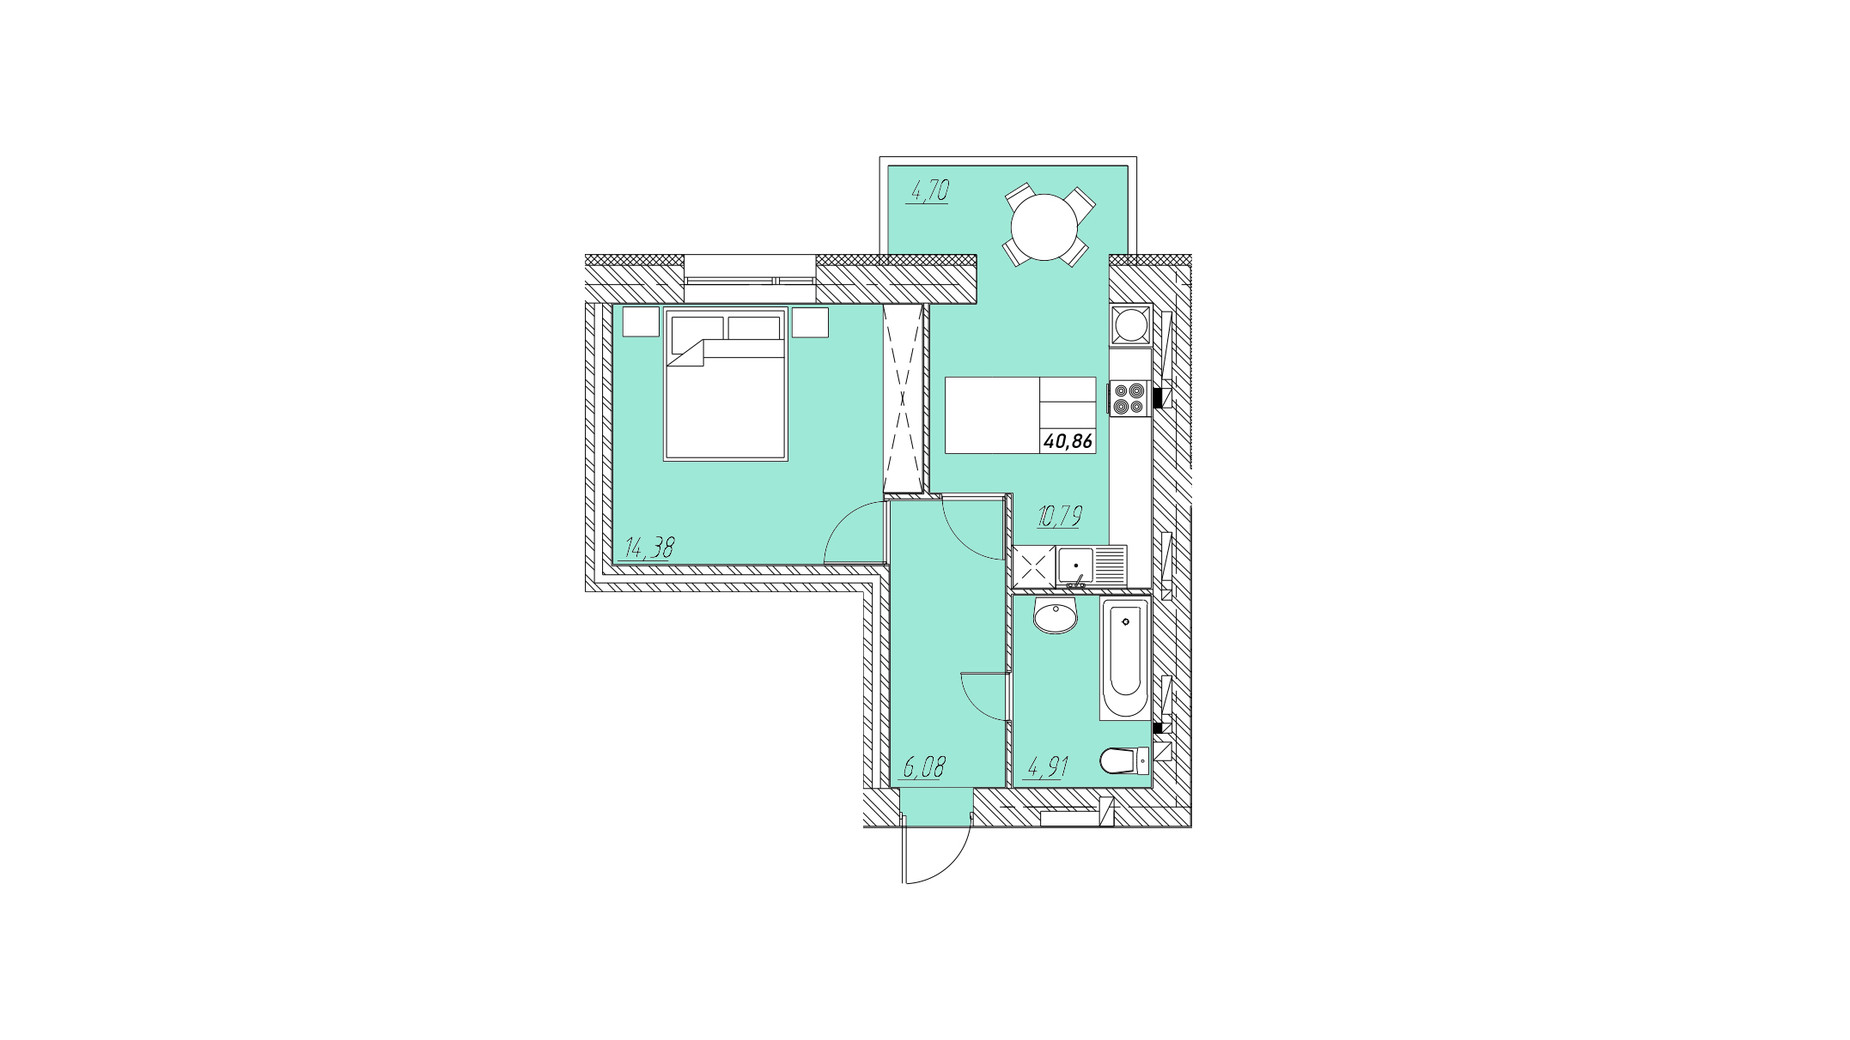 Планировка 1-комнатной квартиры в ЖК на Шептицкого 40.86 м², фото 665909